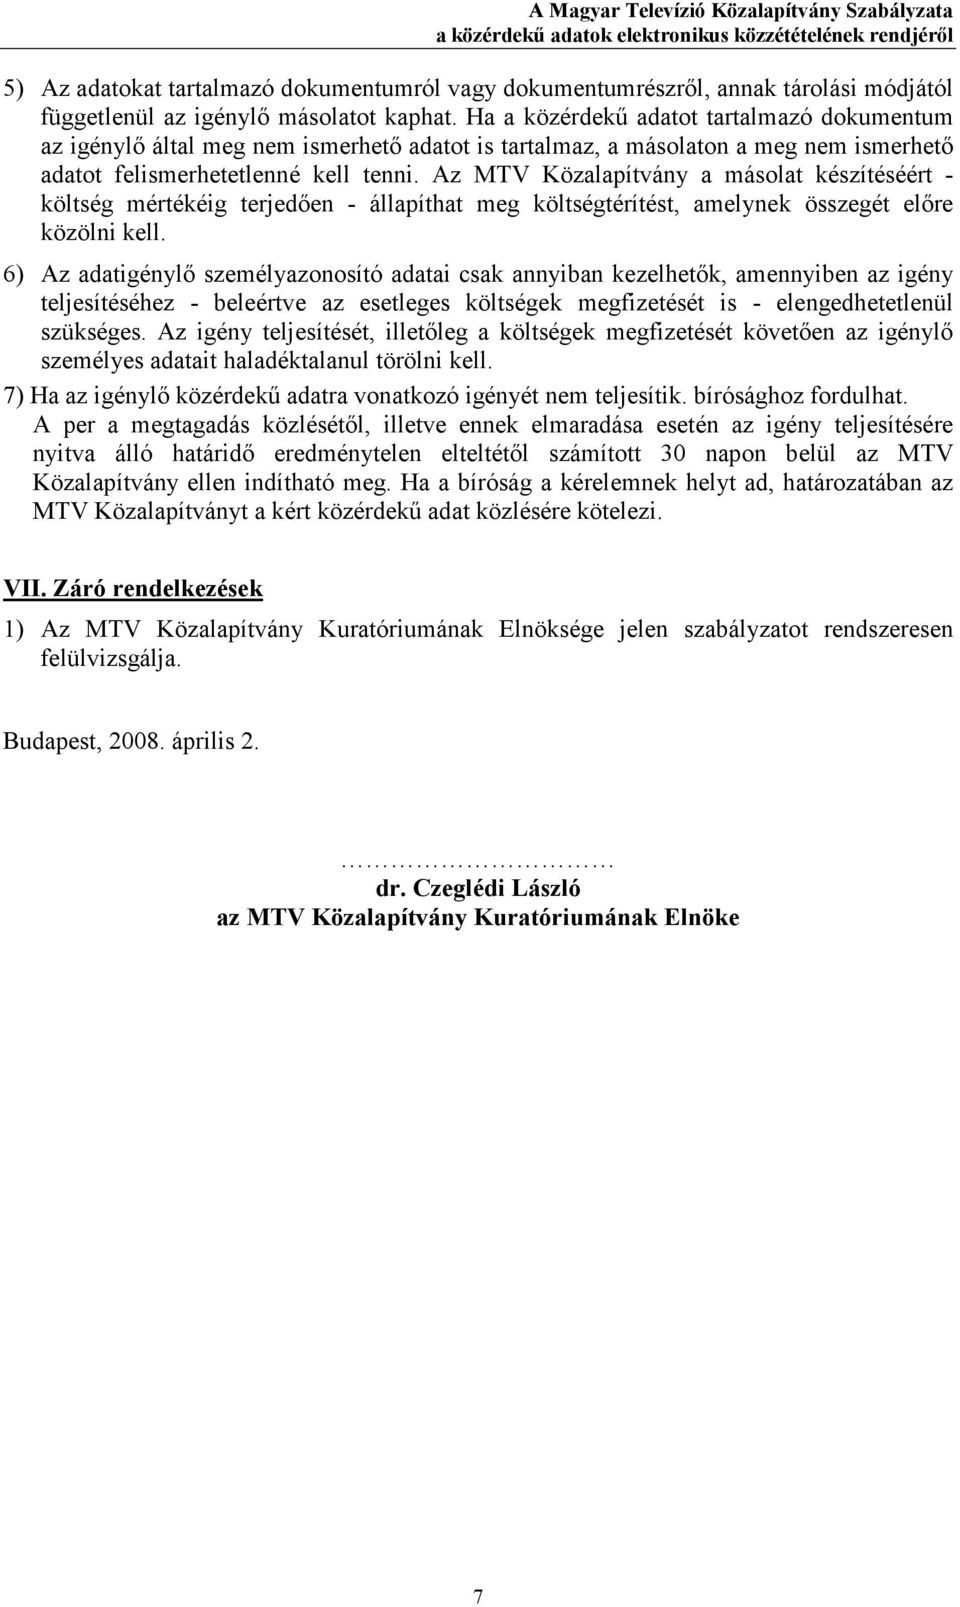 Az MTV Közalapítvány a másolat készítéséért - költség mértékéig terjedıen - állapíthat meg költségtérítést, amelynek összegét elıre közölni kell.